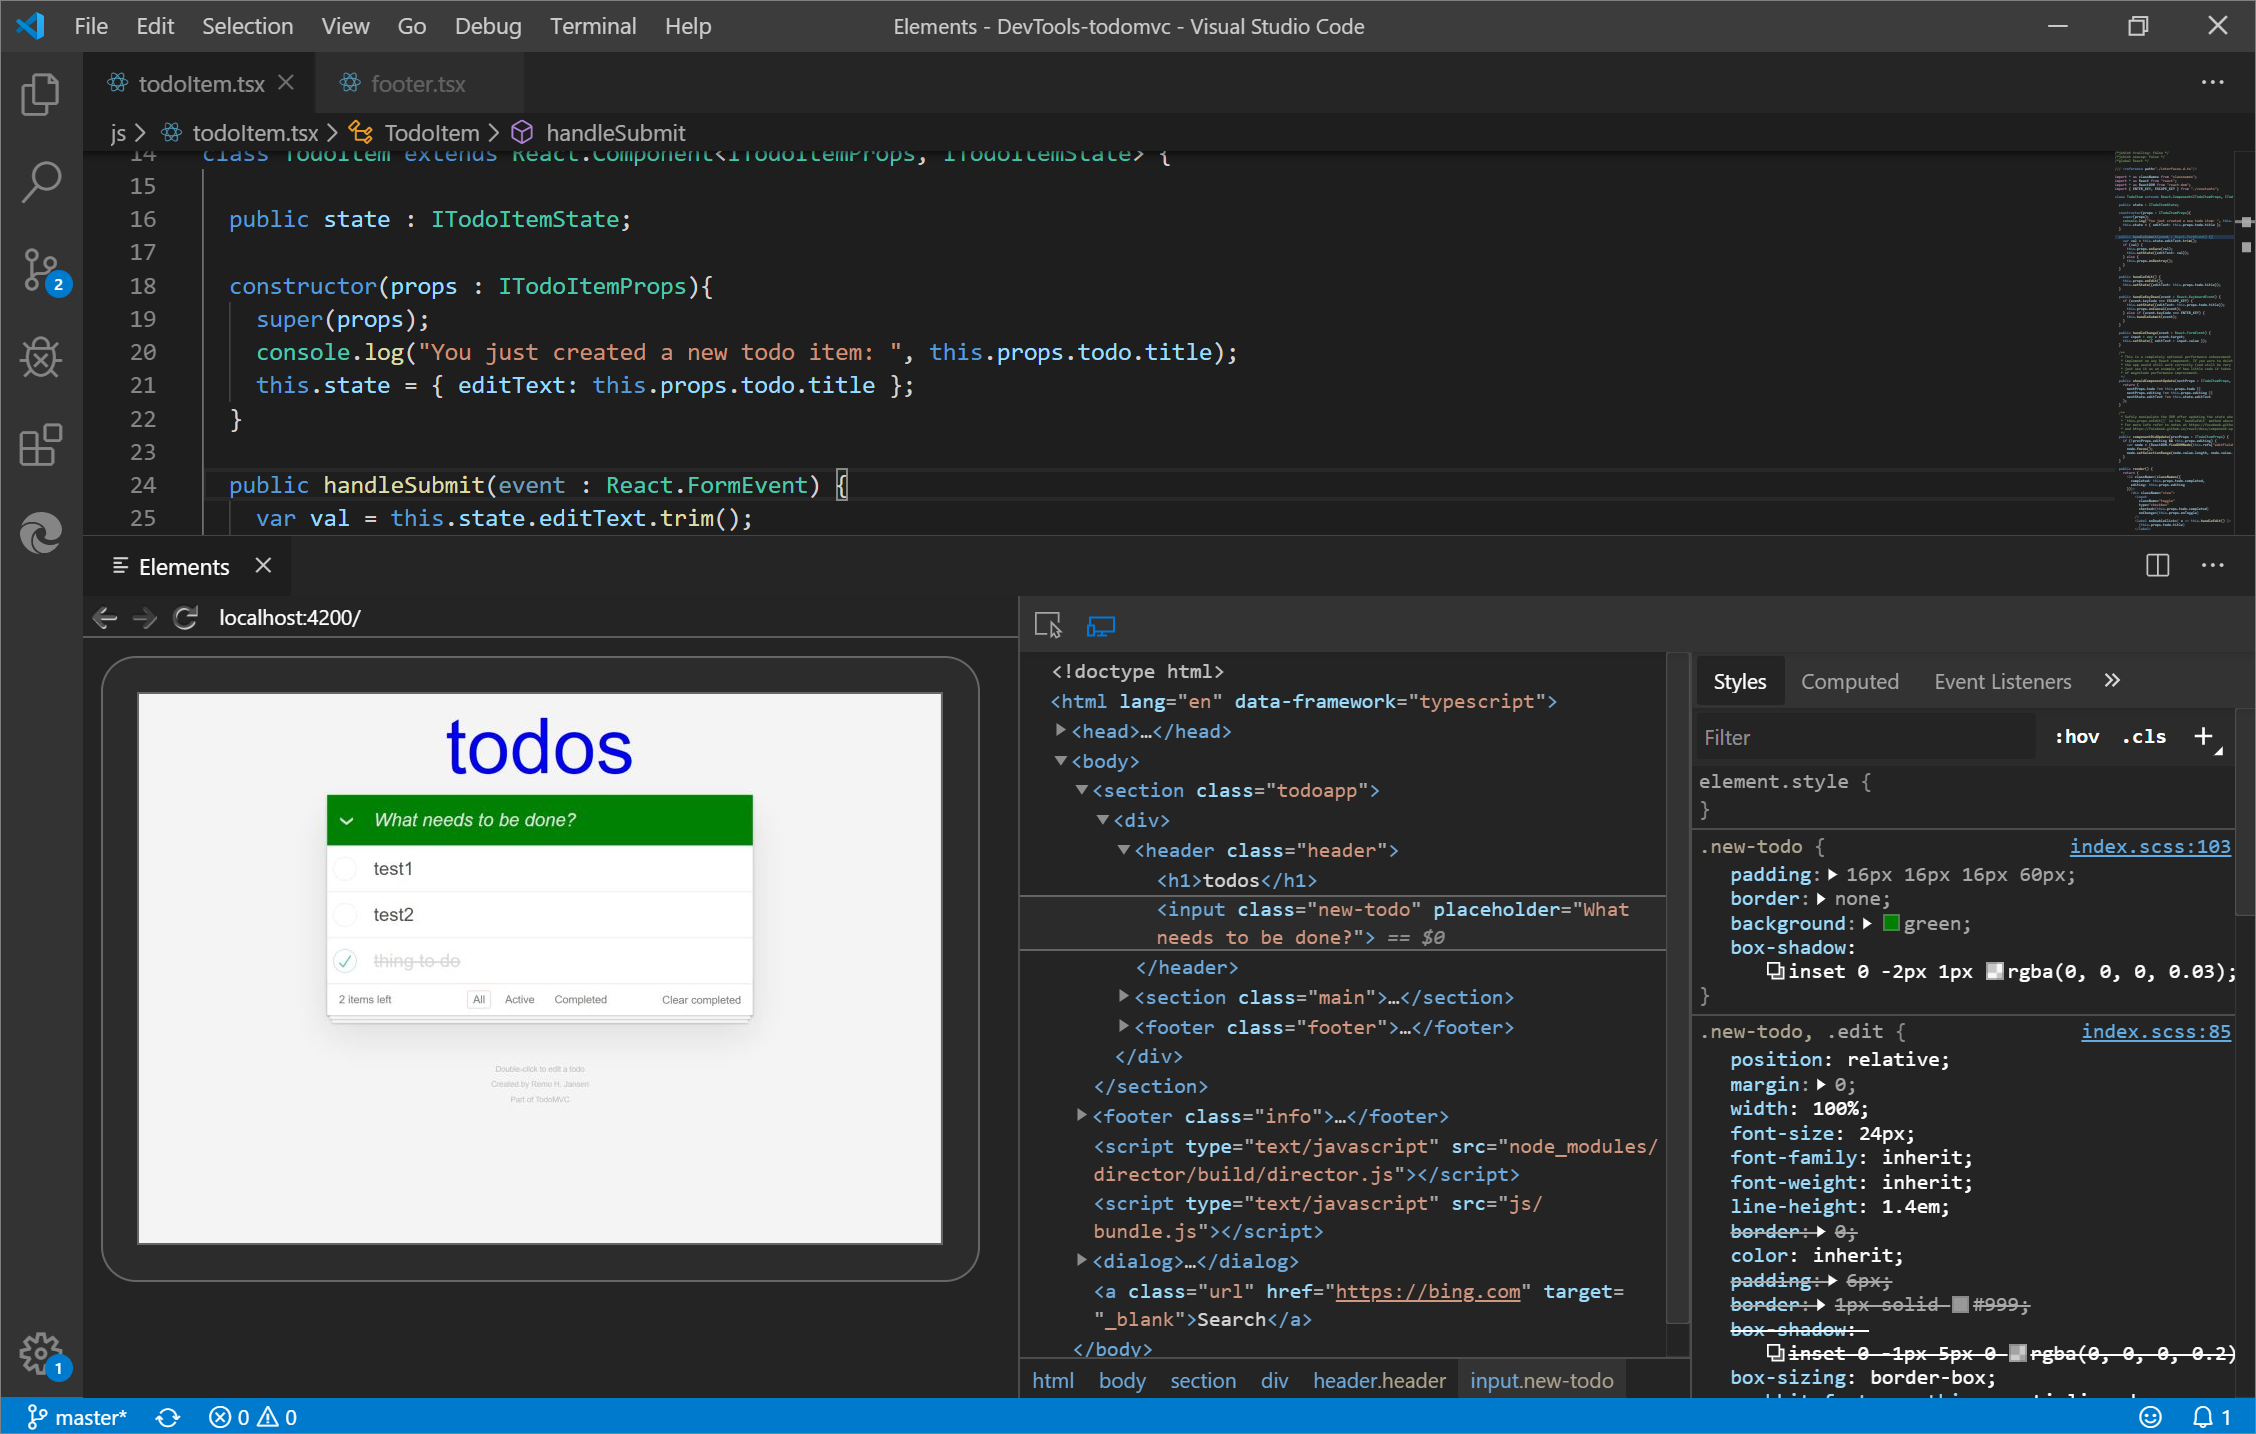 La herramienta Elements de Visual Studio Code mediante la extensión Elements for Microsoft Edge